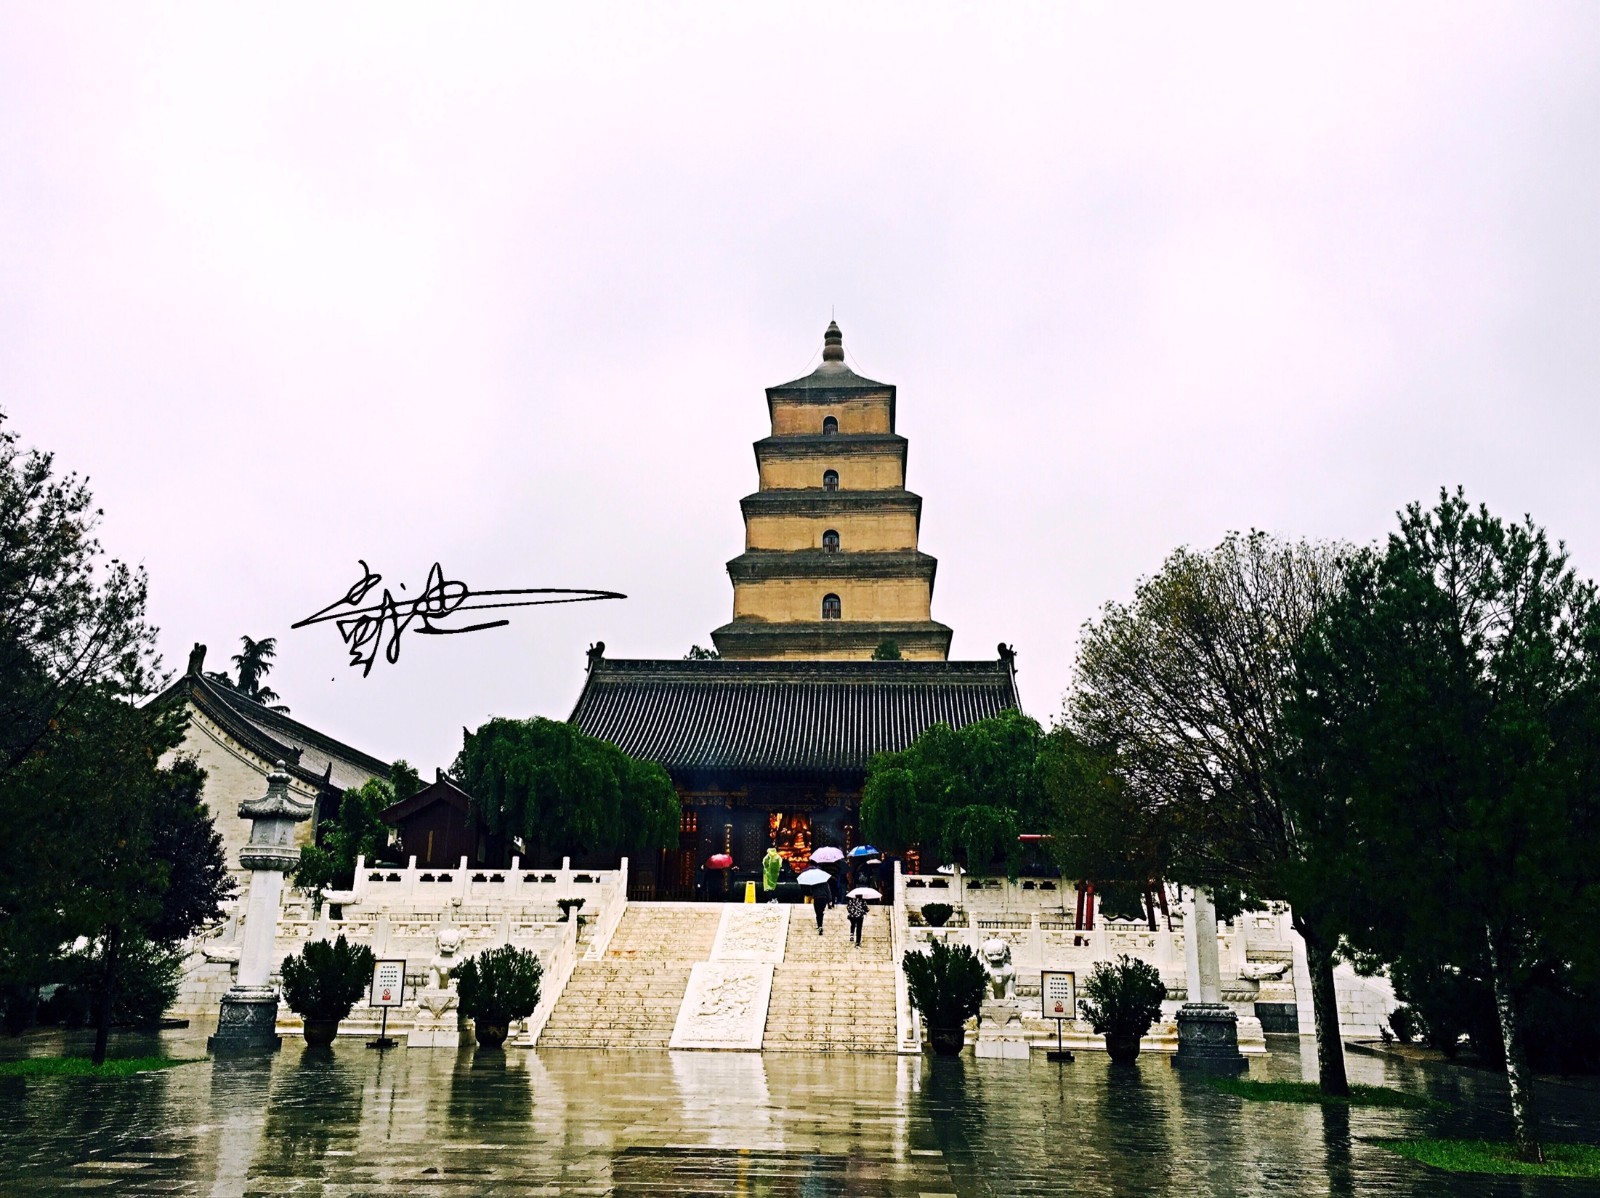 【携程攻略】西安大雁塔景点,唐代大雁塔原是唐朝皇帝为西行印度取得的佛经而建，塔前有玄奘的塑像…